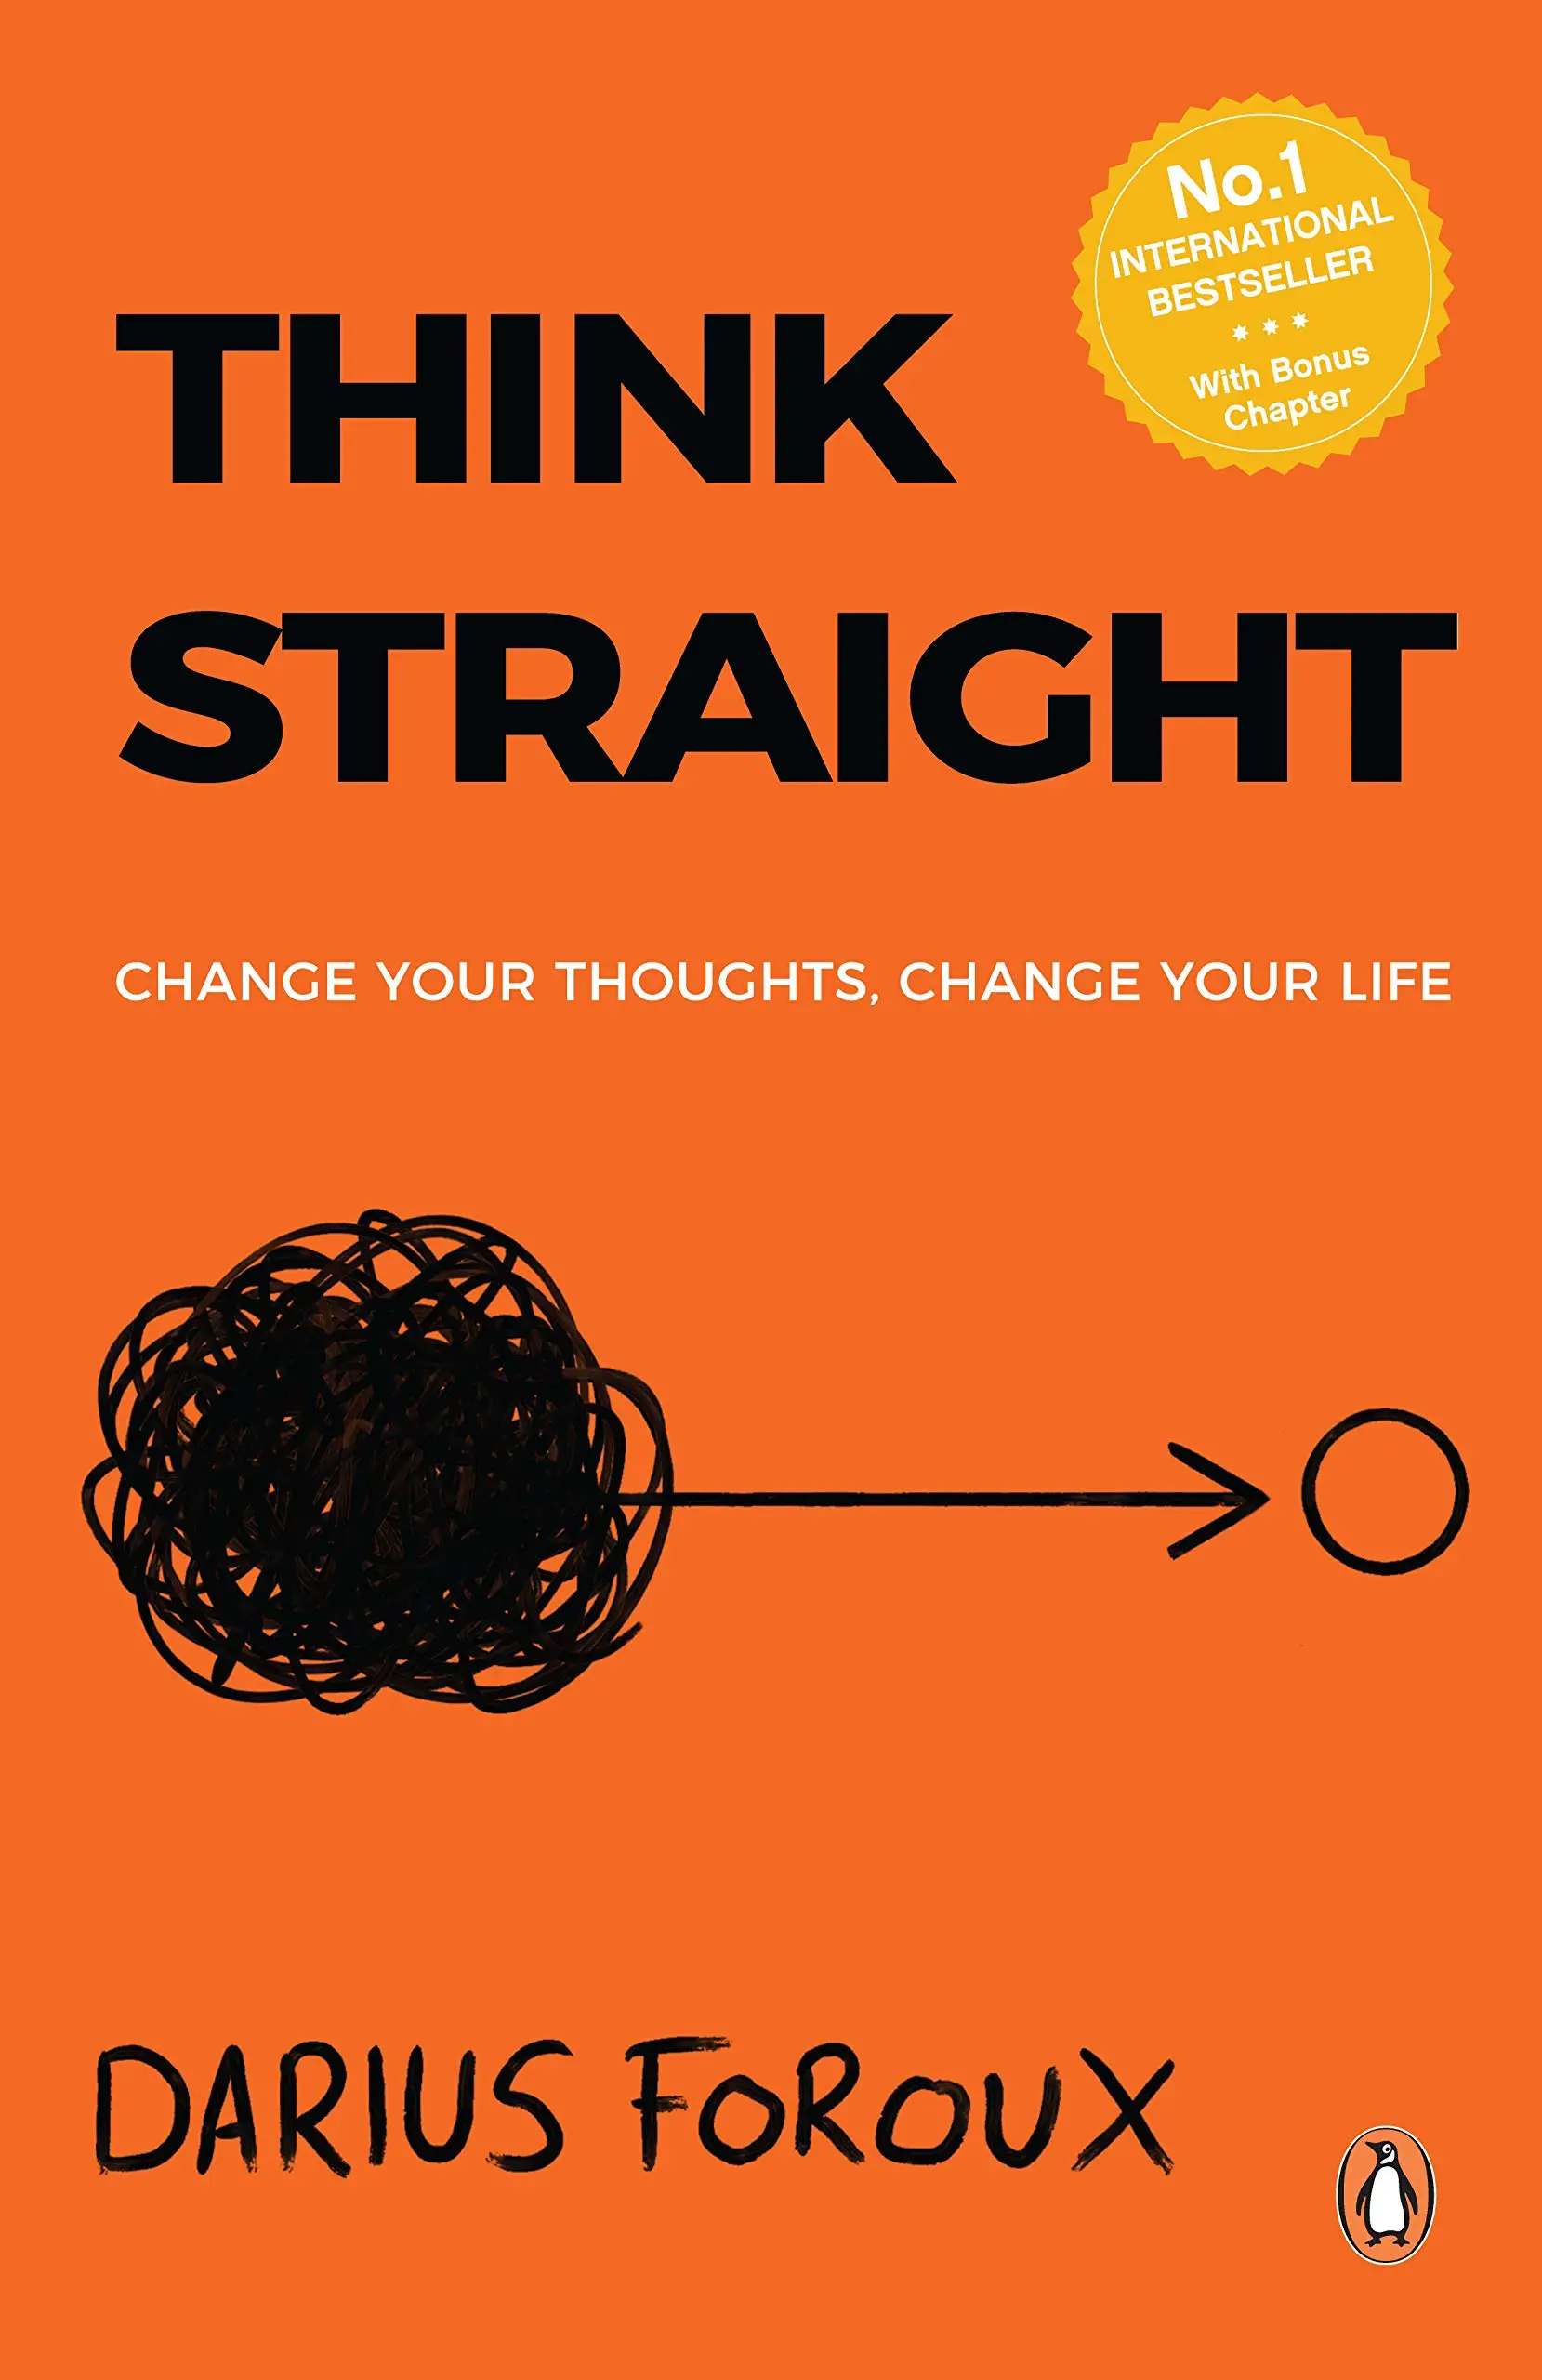 Book Summary of Think Straight 